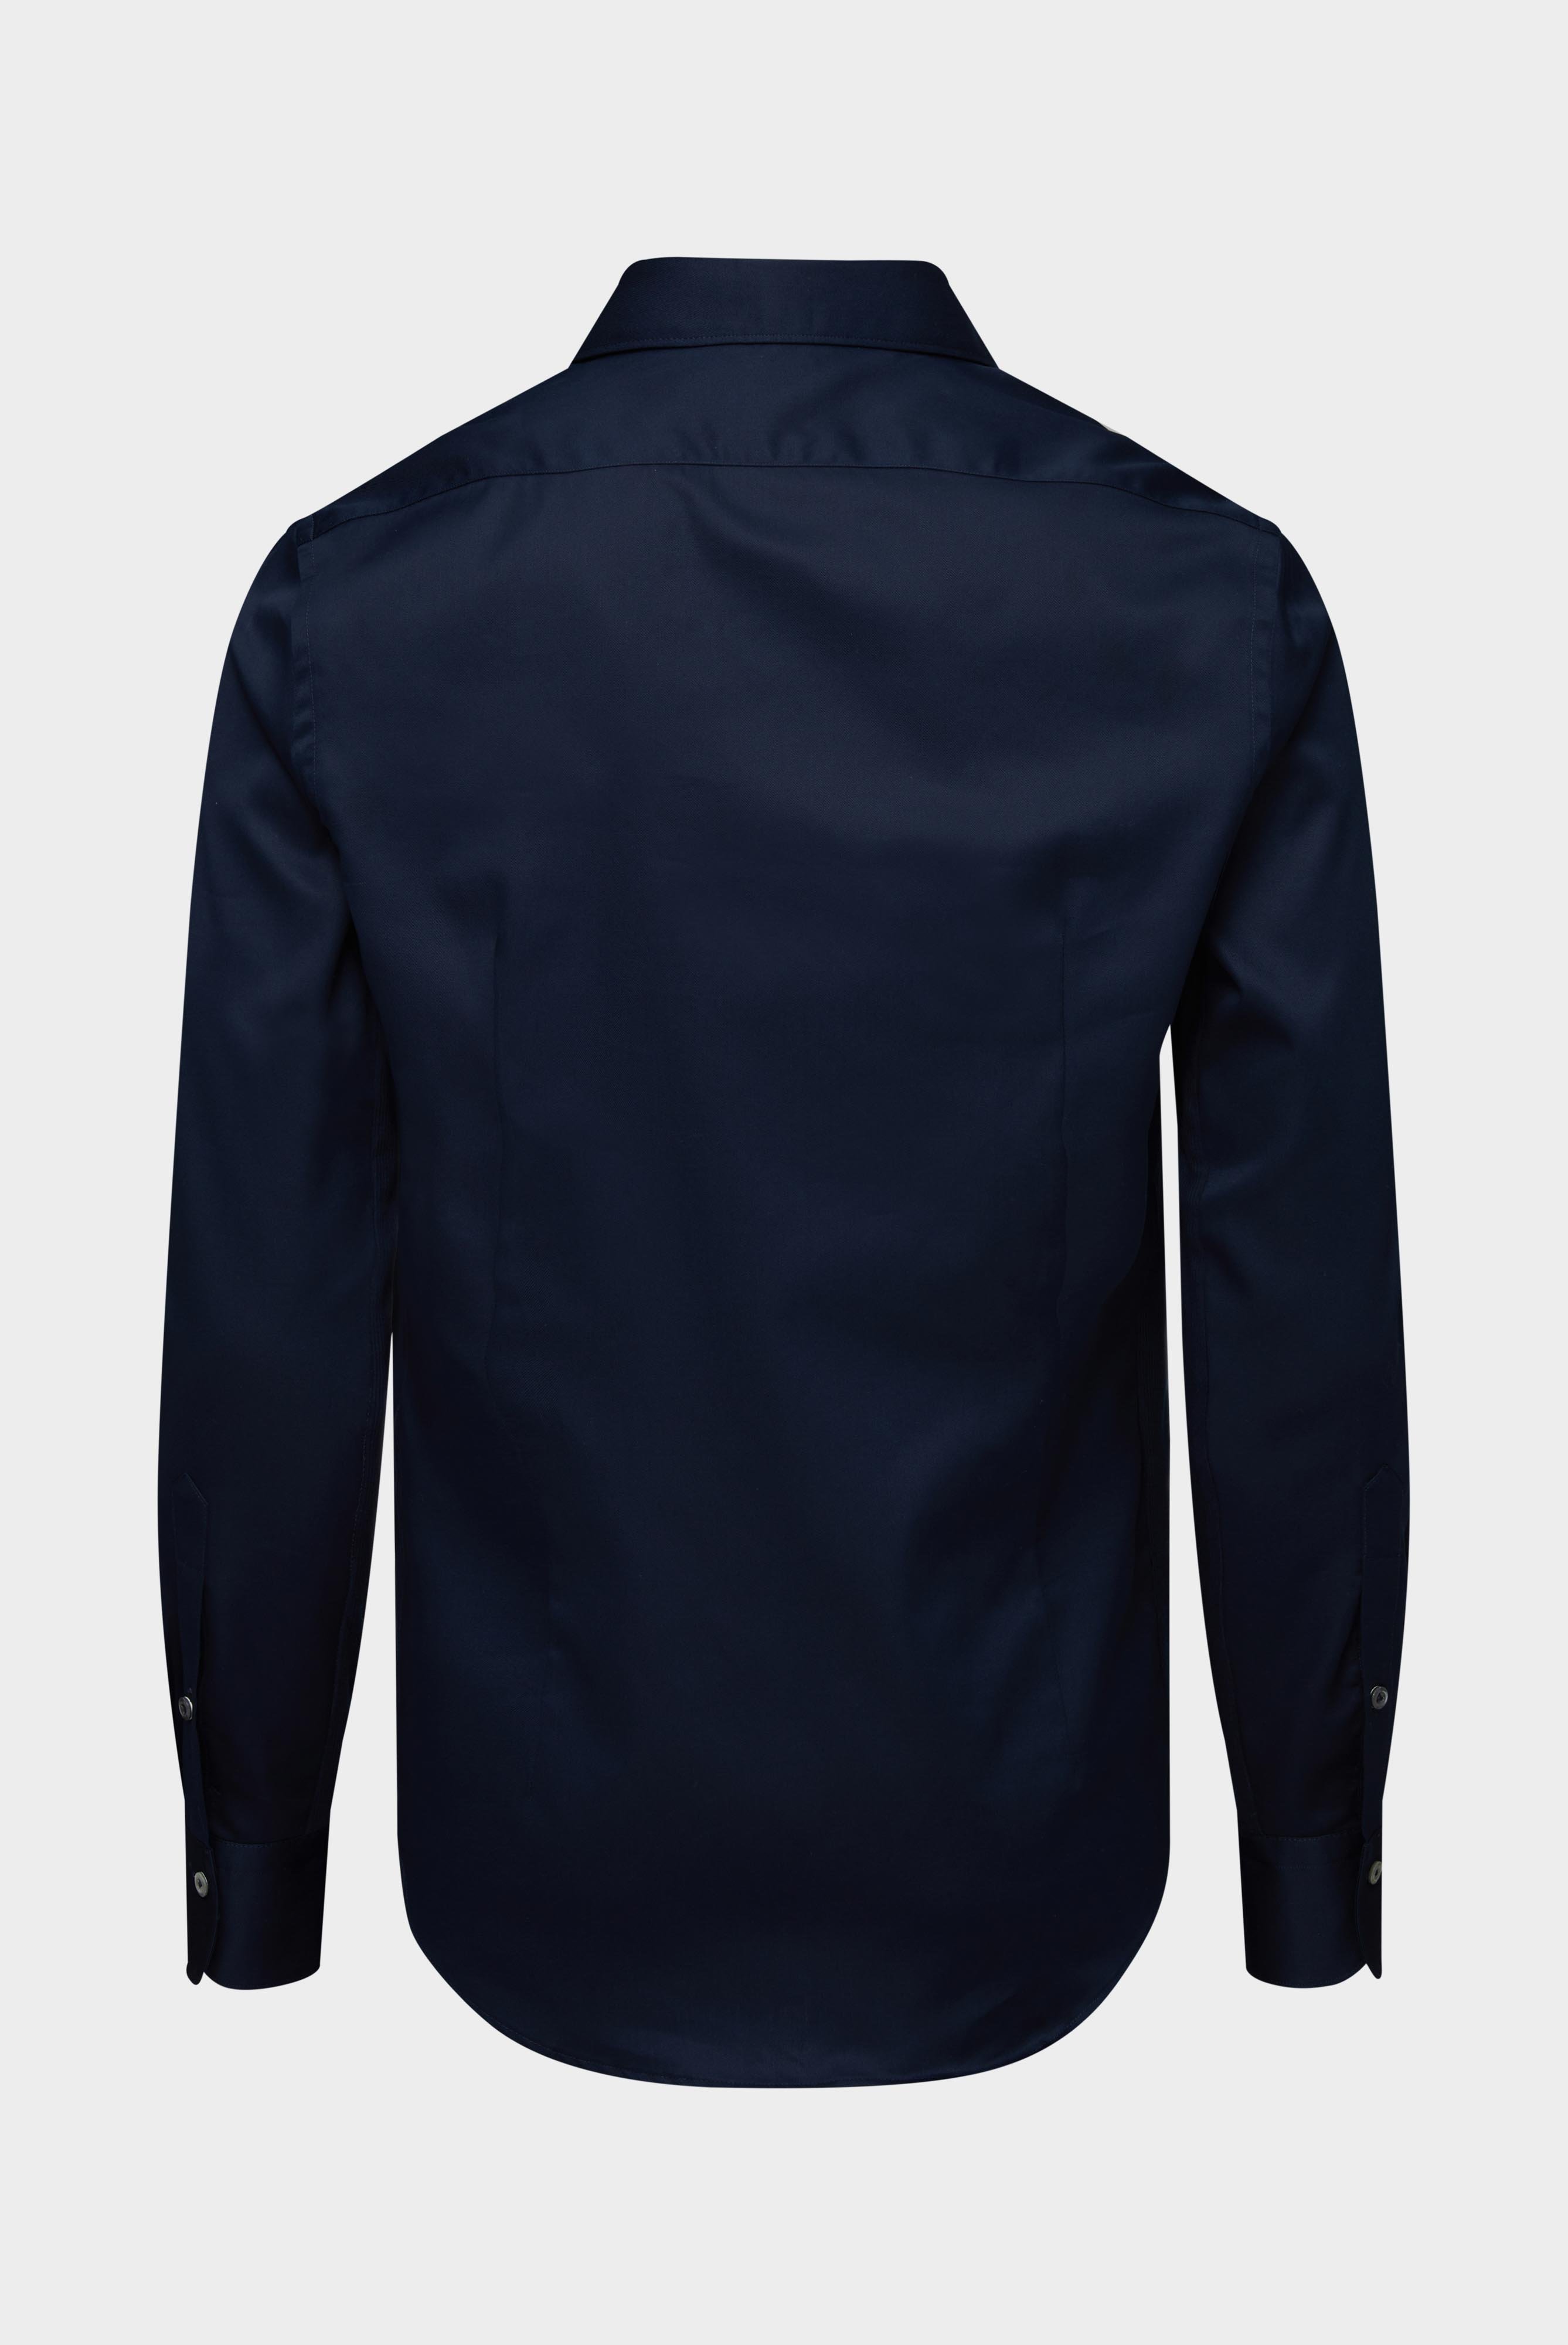 Bügelleichte Hemden+Bügelfreies Hybridshirt mit Jerseyeinsatz Slim Fit+20.2553.0F.132241.785.37